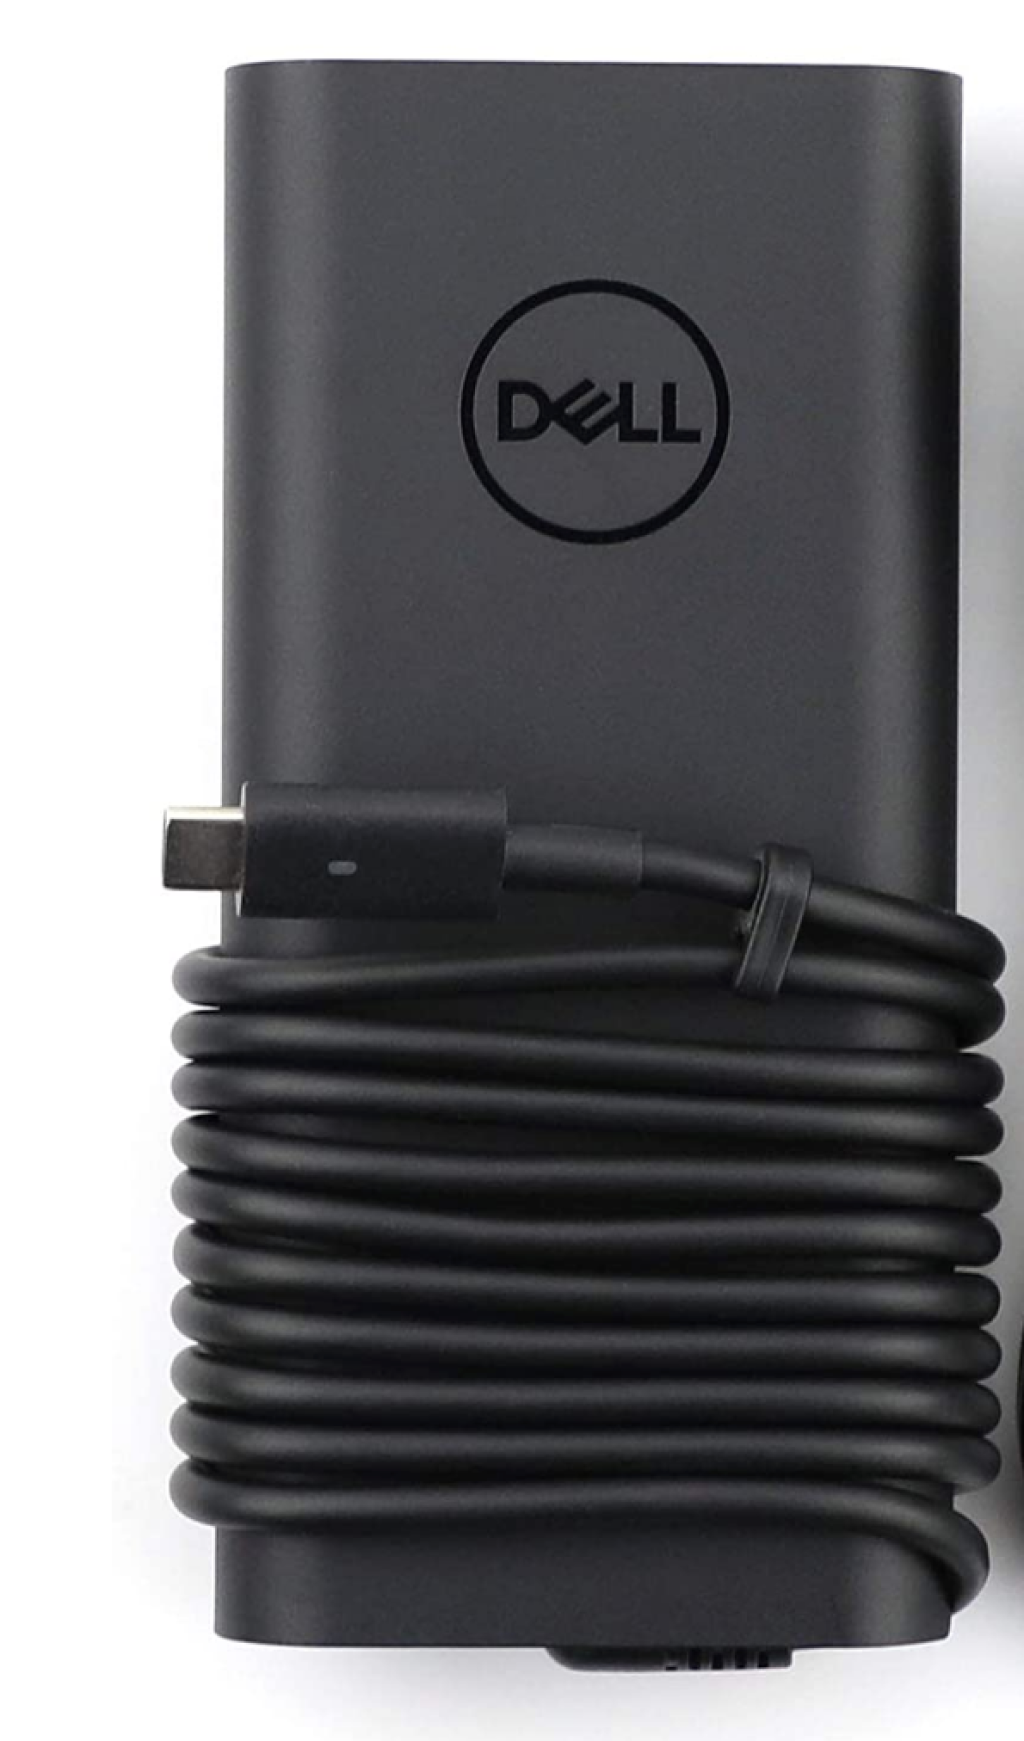 Dell USB-C Type-C 130W Orjinal Şarj Adaptörü DA130PM170 0K00F5 0M0H25 07MP1P 0CW1FP TM7MV 450-AHRG 5530 2in1 5550 5750 Dell XPS 15 2in1 9575 9500 17 9700 0M0H25 M0H25 k00F5 DA130PM170 20v 6.3a /20v 4.62a / 20V 3.25A / 12V 2A / 5V 2A